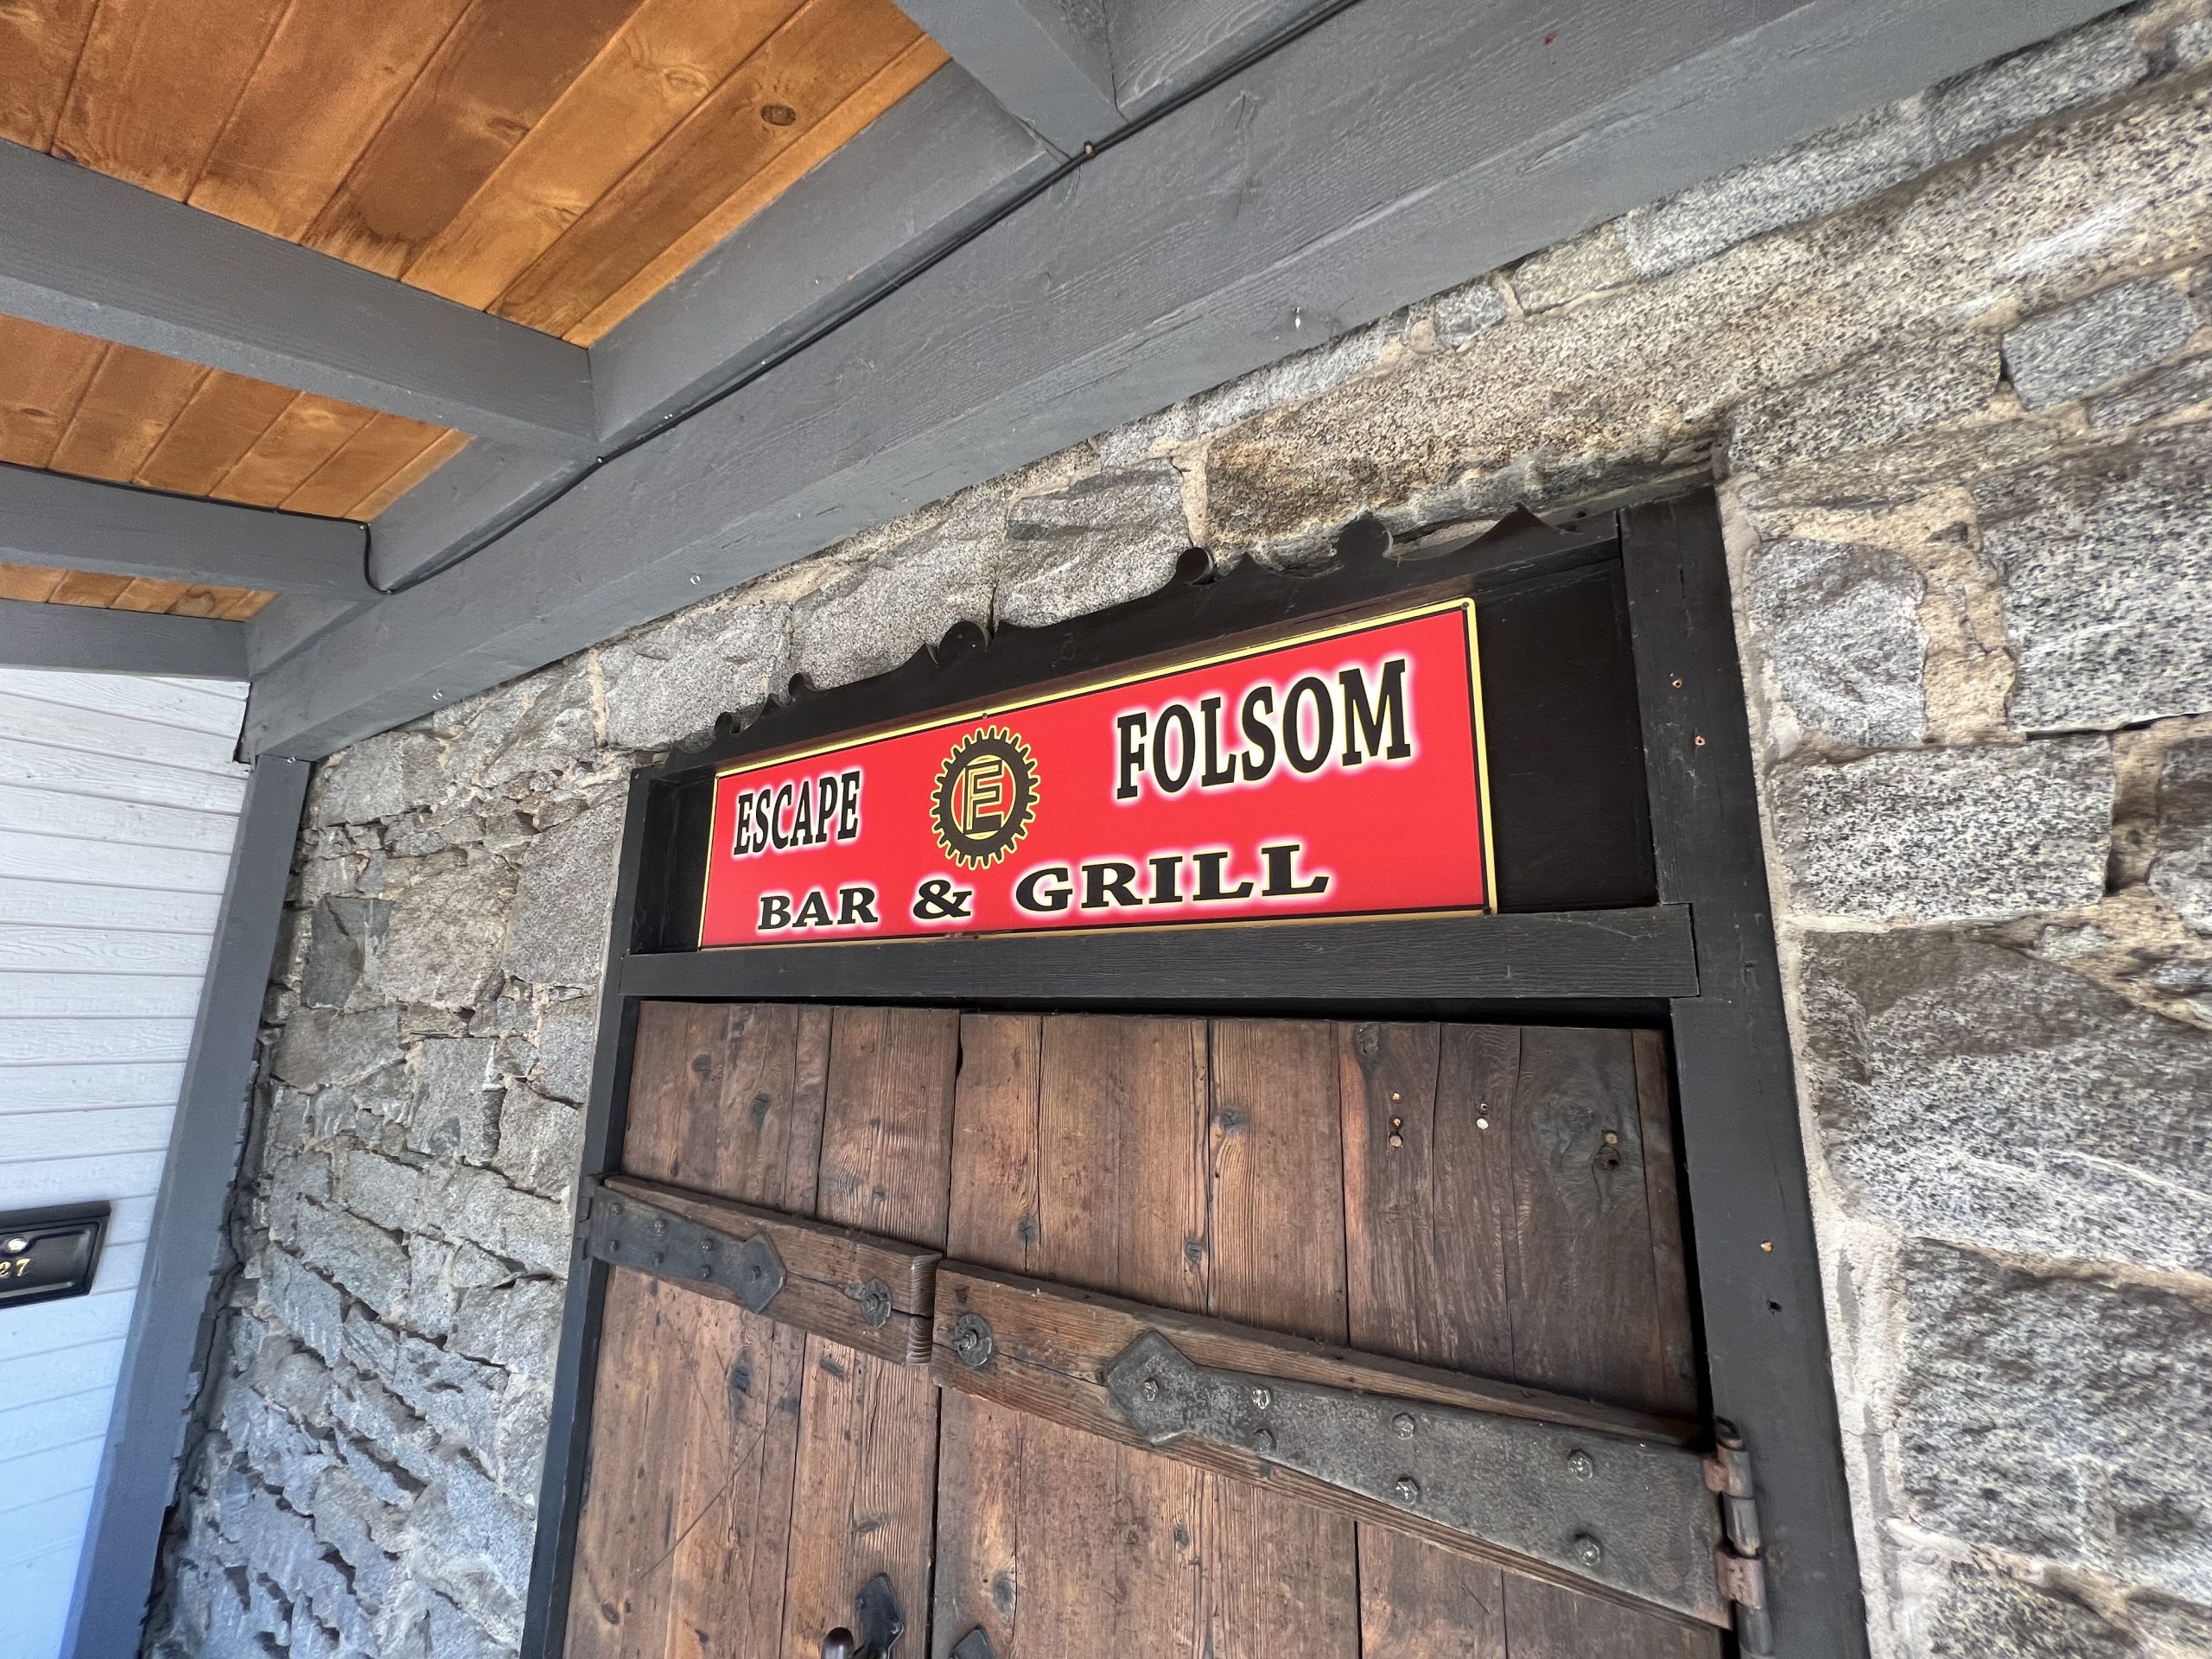 Historic District’s Escape Folsom closing its doors